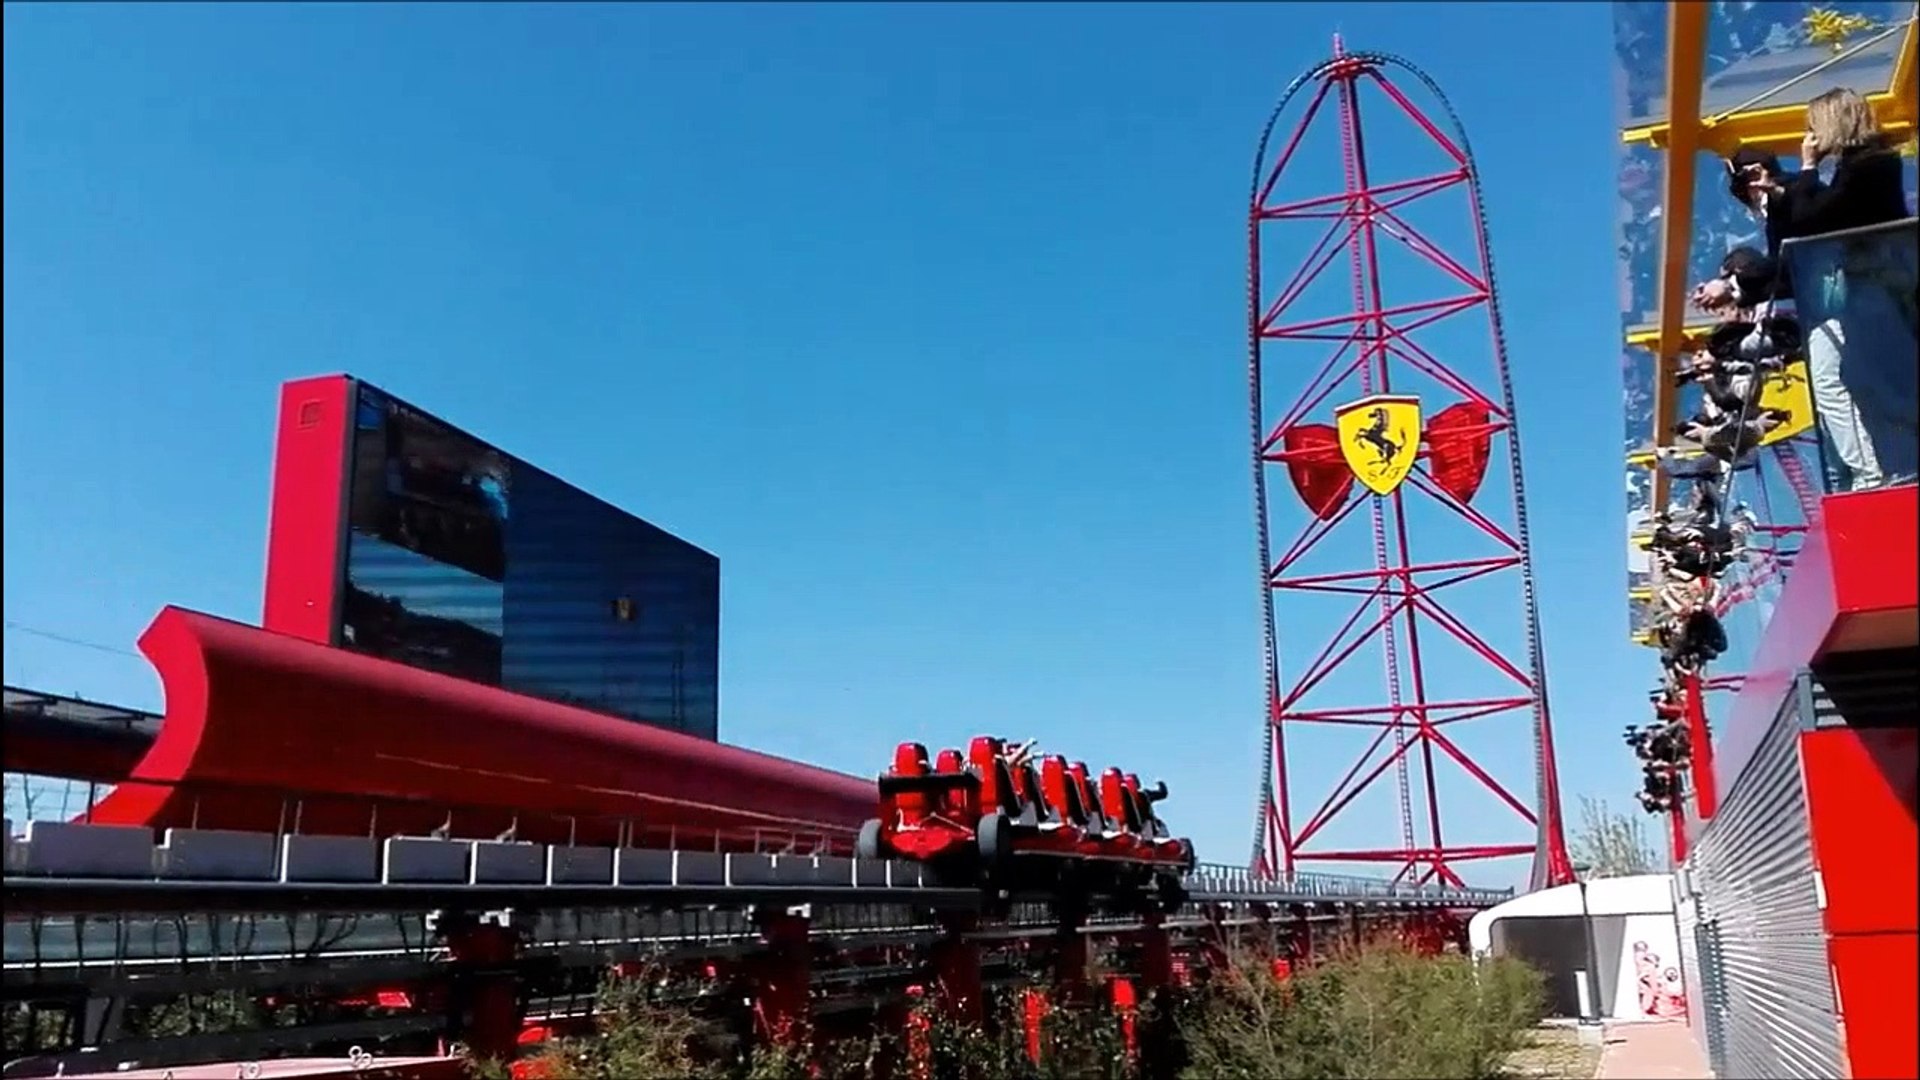 Ferrari Land à PortAventura, le nouveau parc d'attractions espagnol - Vidéo  Dailymotion